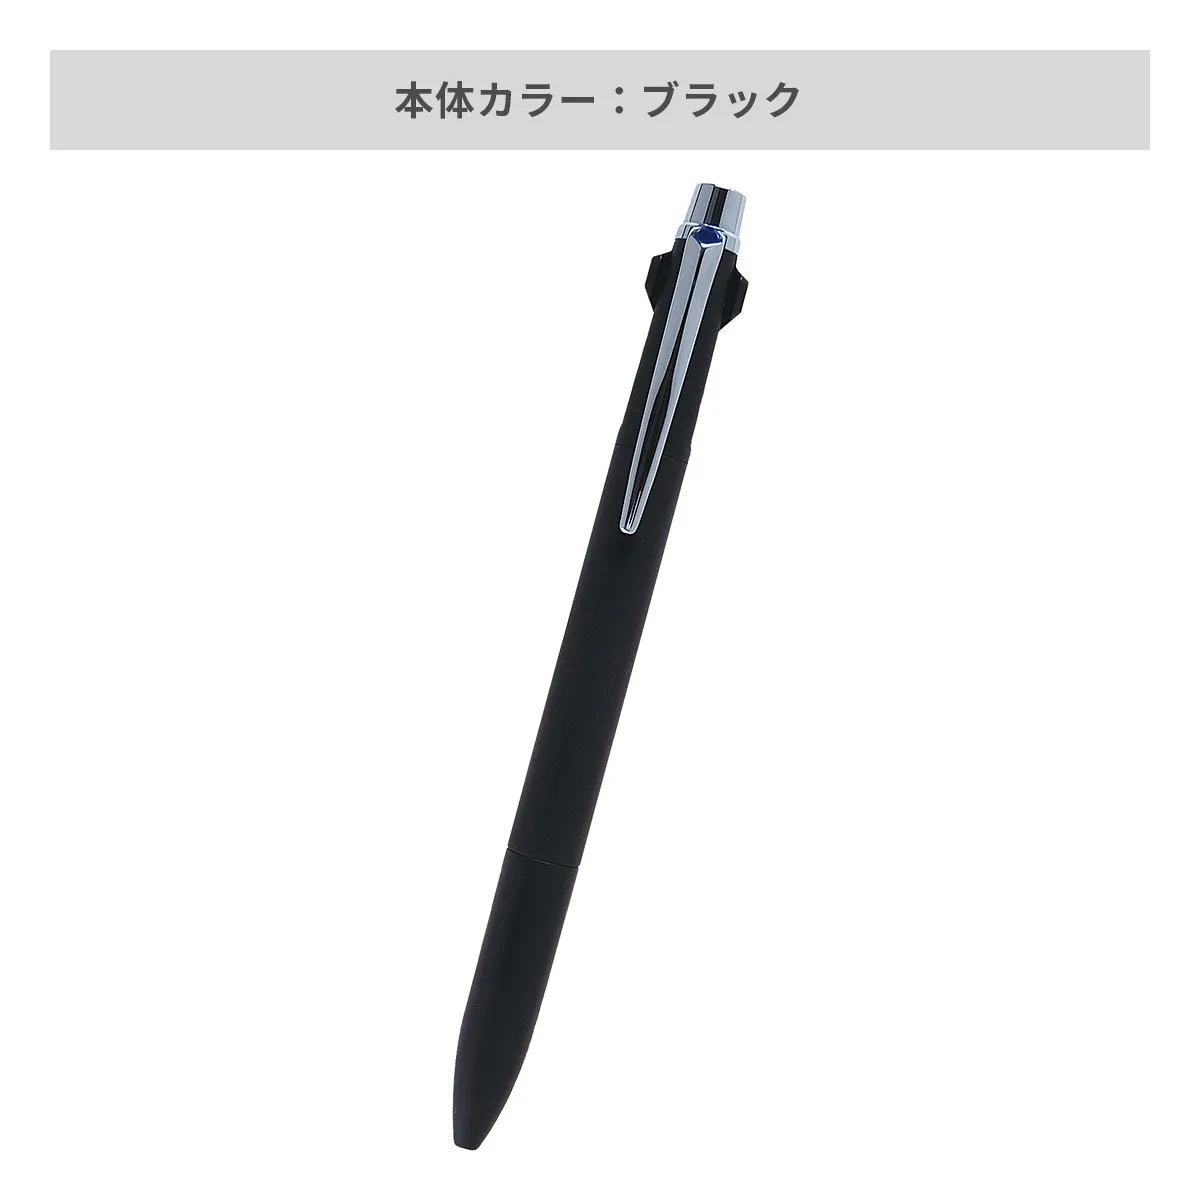 【短納期】三菱鉛筆 ジェットストリーム プライム 3色ボールペン 0.7mm【名入れボールペン / レーザー彫刻】 画像3